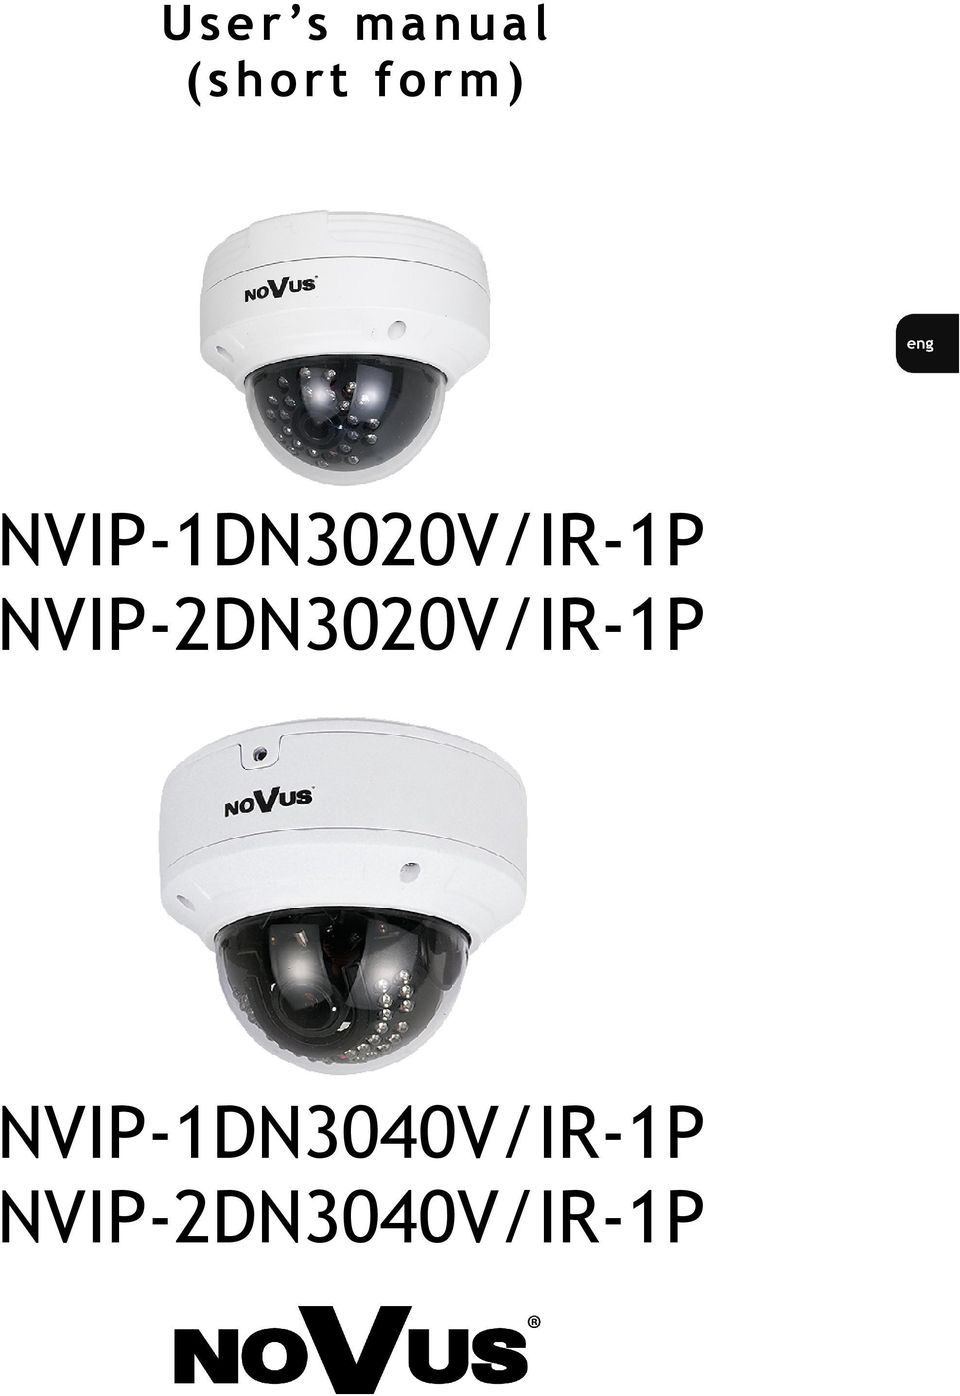 NVIP-2DN3020V/IR-1P